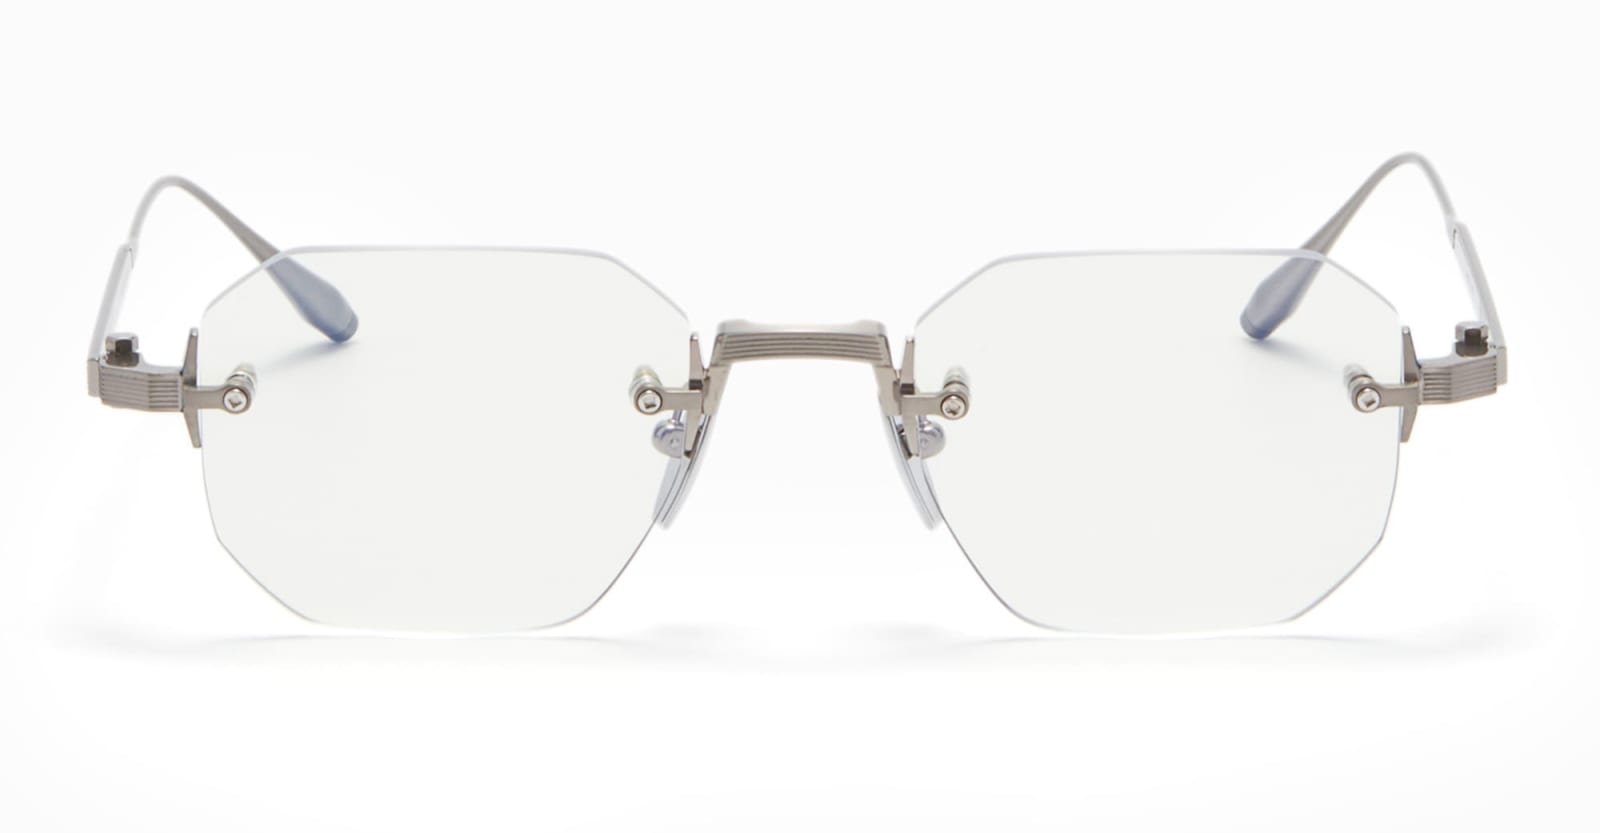 Juno-one - Antique Silver Rx Glasses